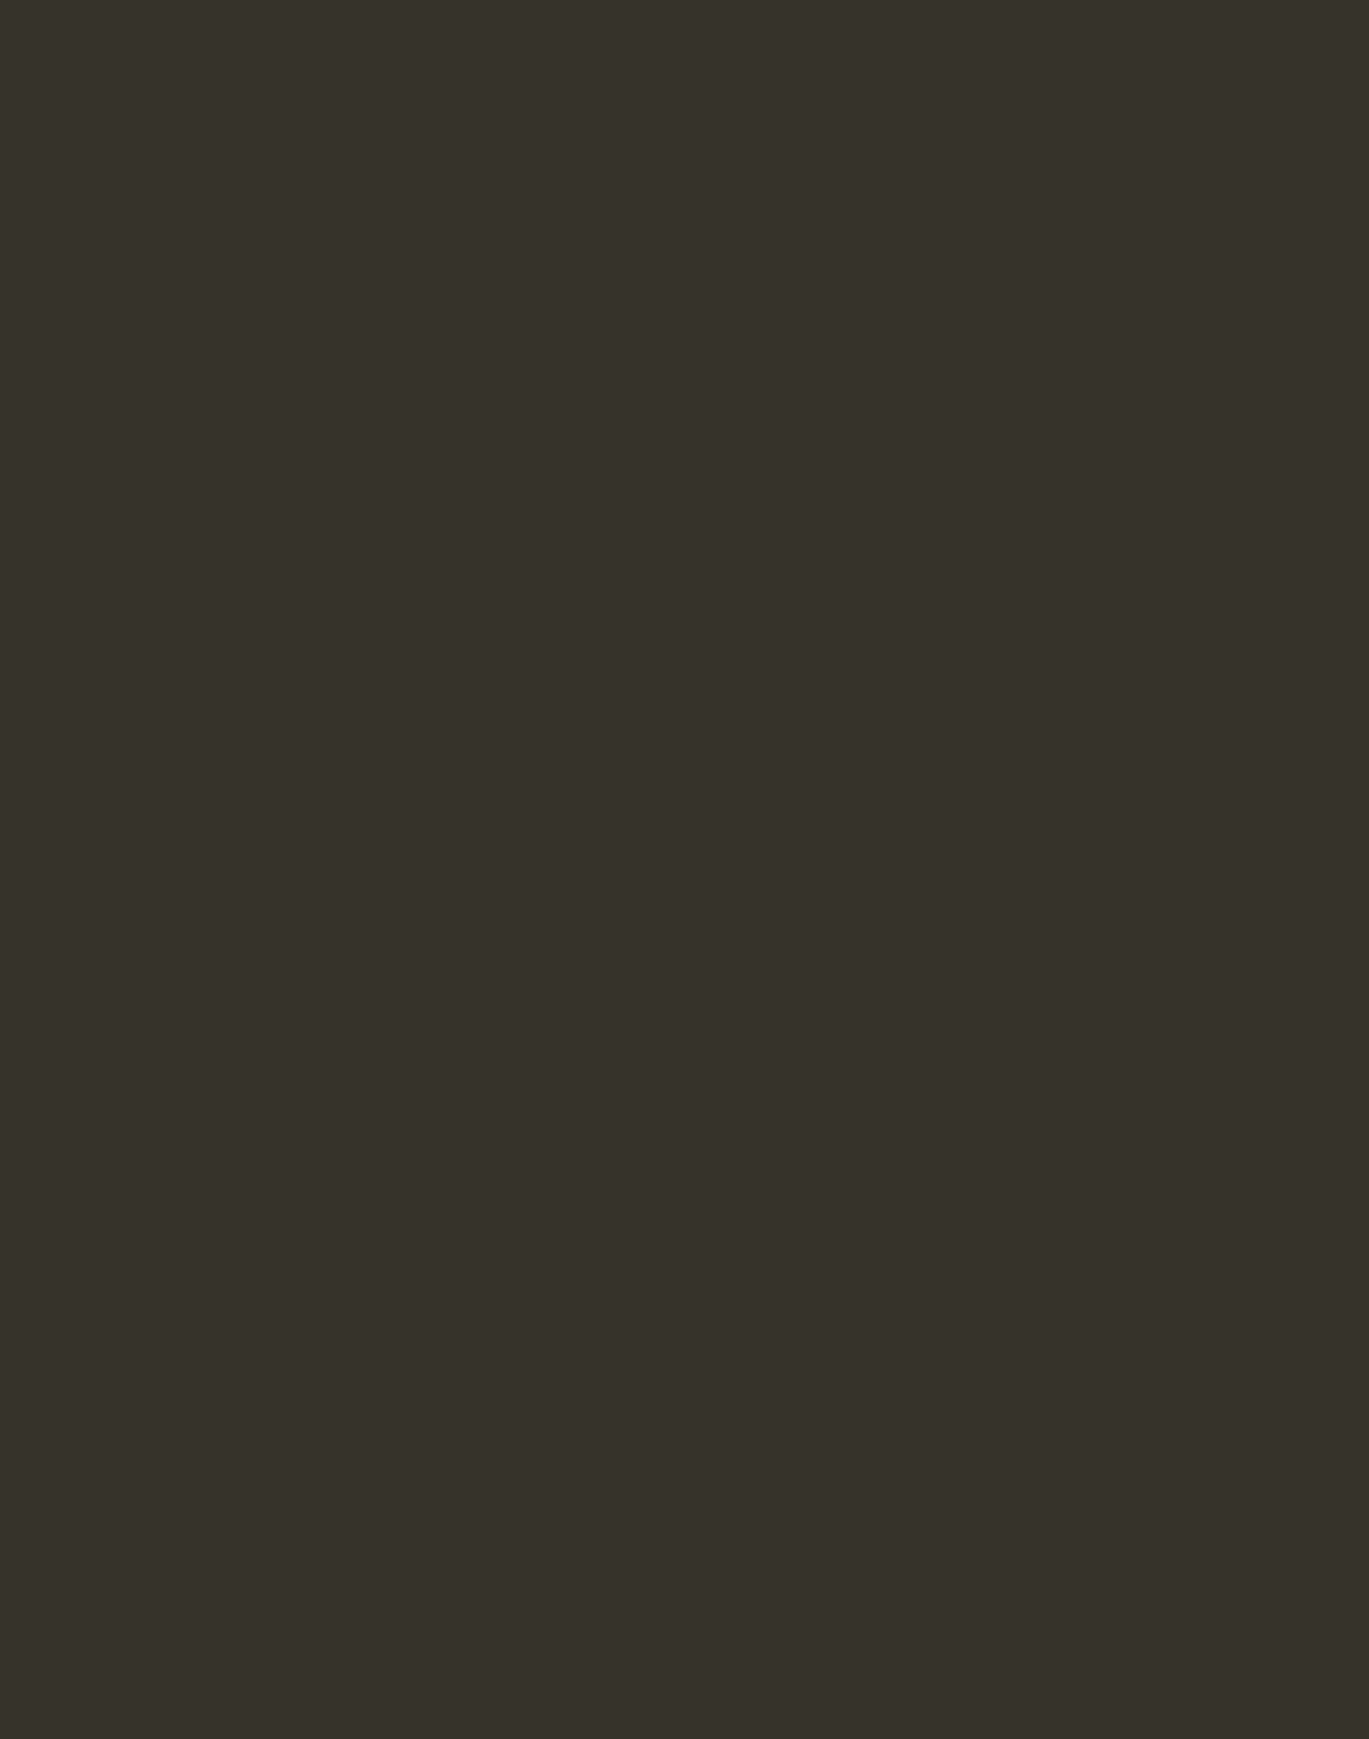 Алексей Антропов. Портрет Анастасии Измайловой. 1759. Государственная Третьяковская галерея, Москва